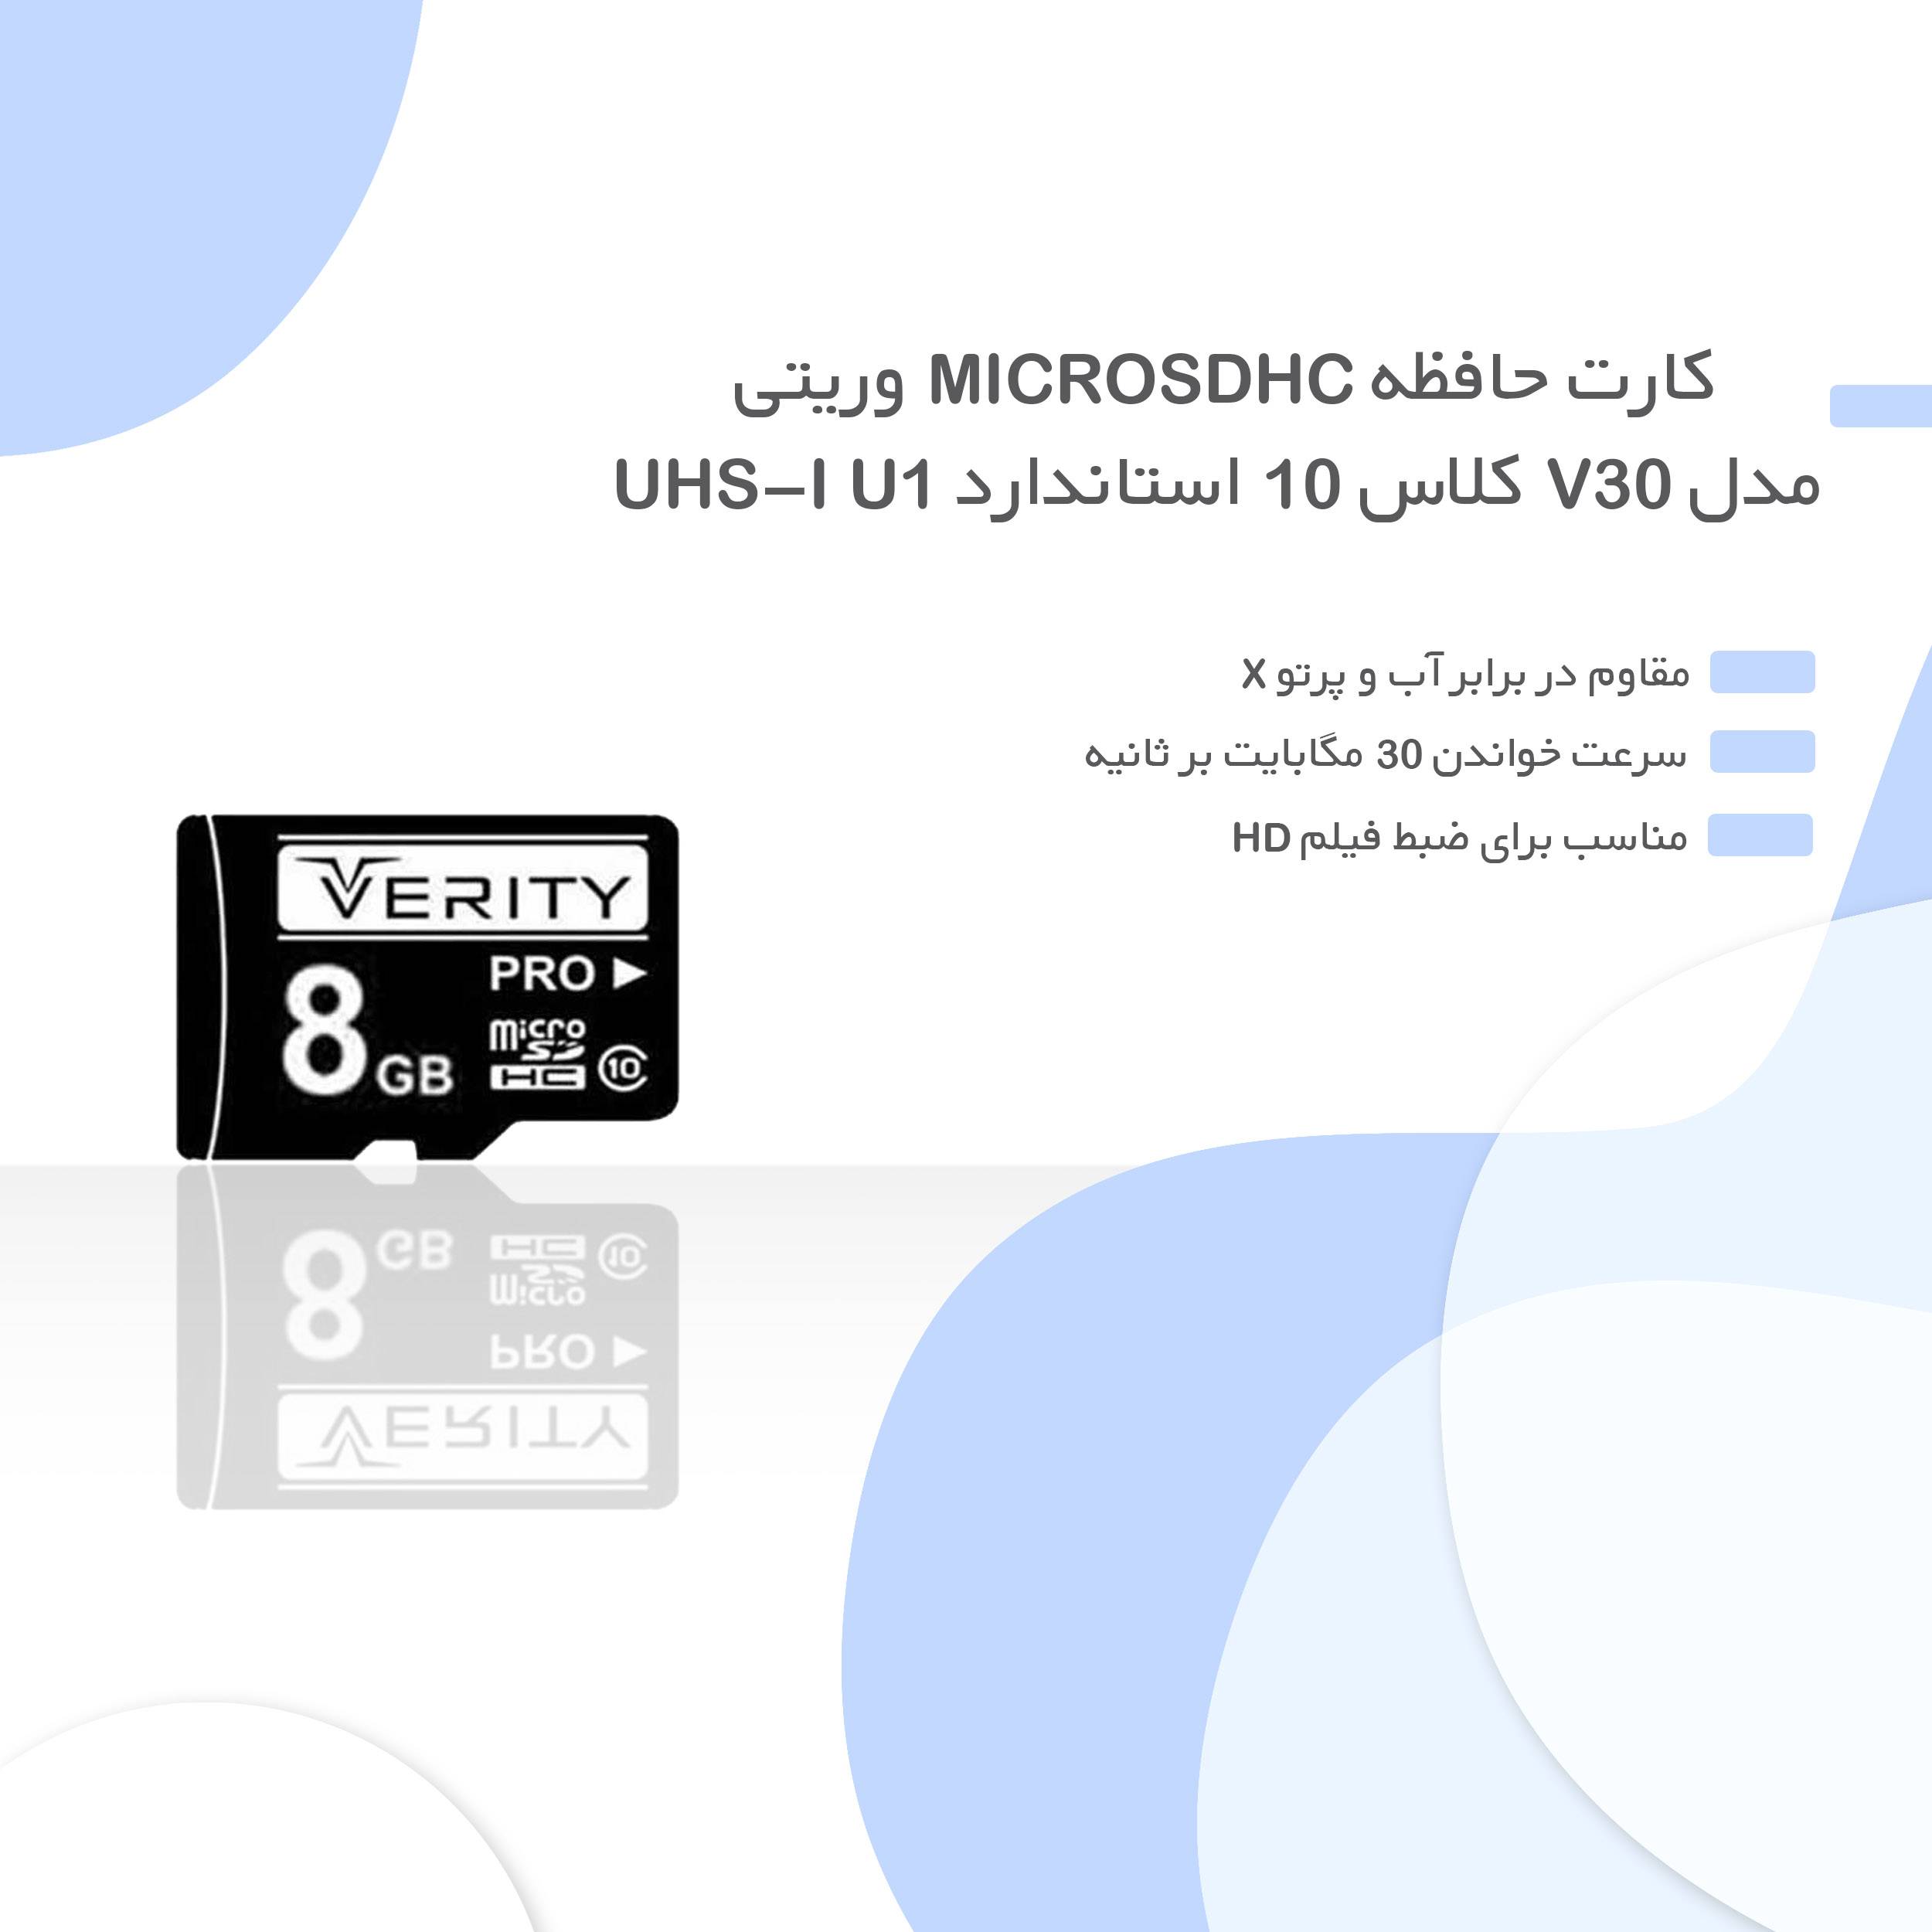 کارت حافظه microSDHC وریتی مدل V30 کلاس 10 استاندارد UHS-I U1 سرعت 30MBps ظرفیت 8 گیگابایت